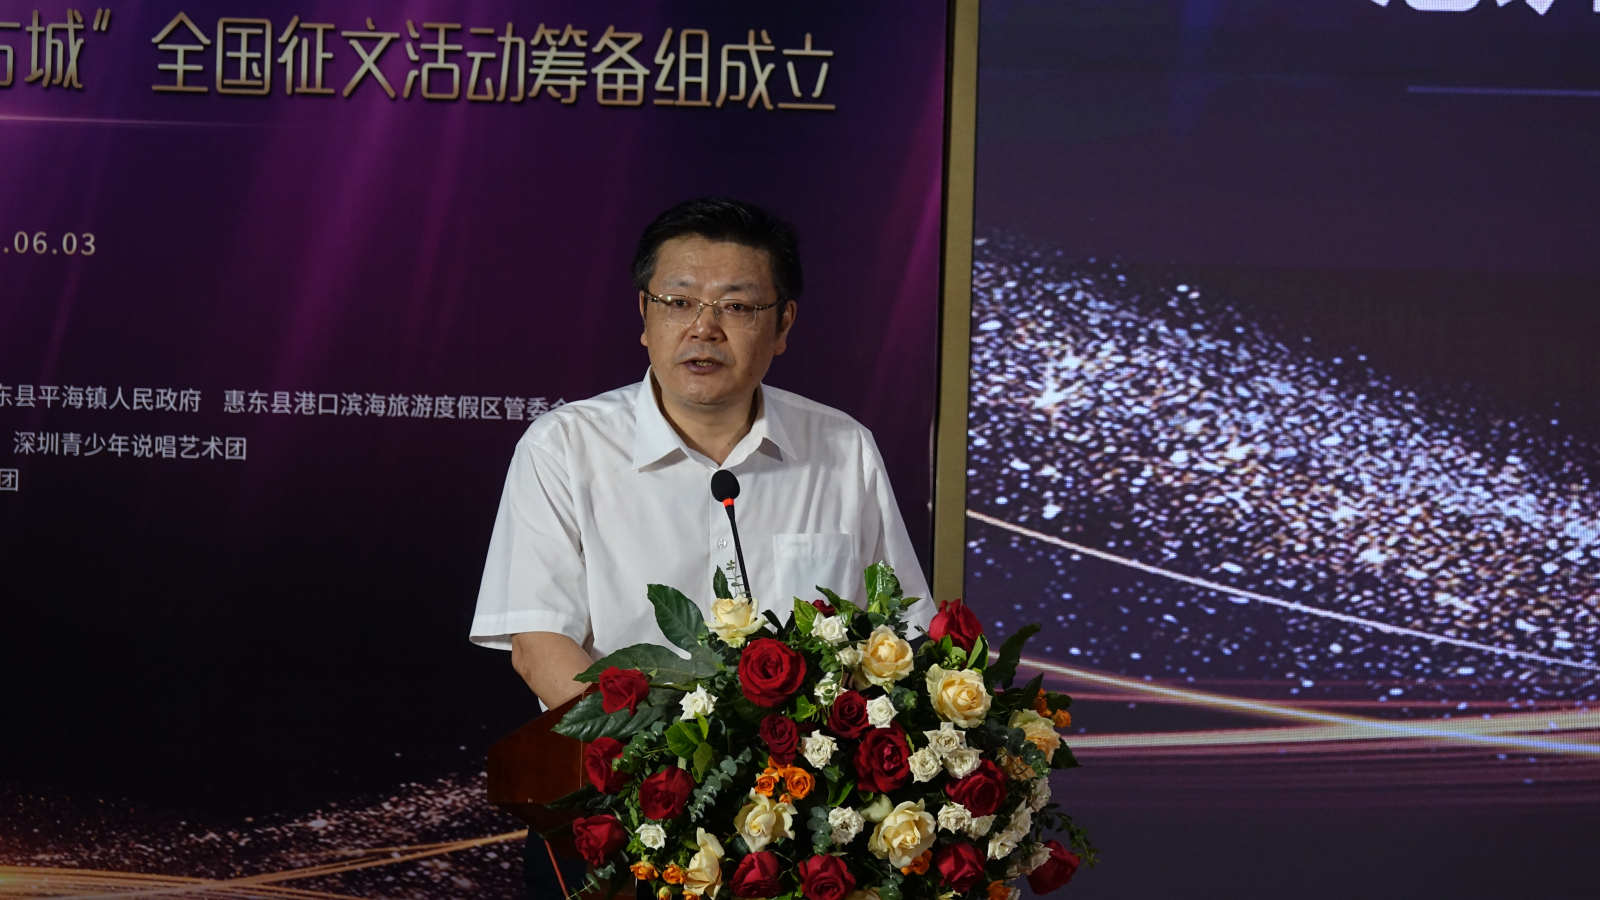 5、惠州市文学艺术界联合会主席徐海东在活动上致辞.jpg